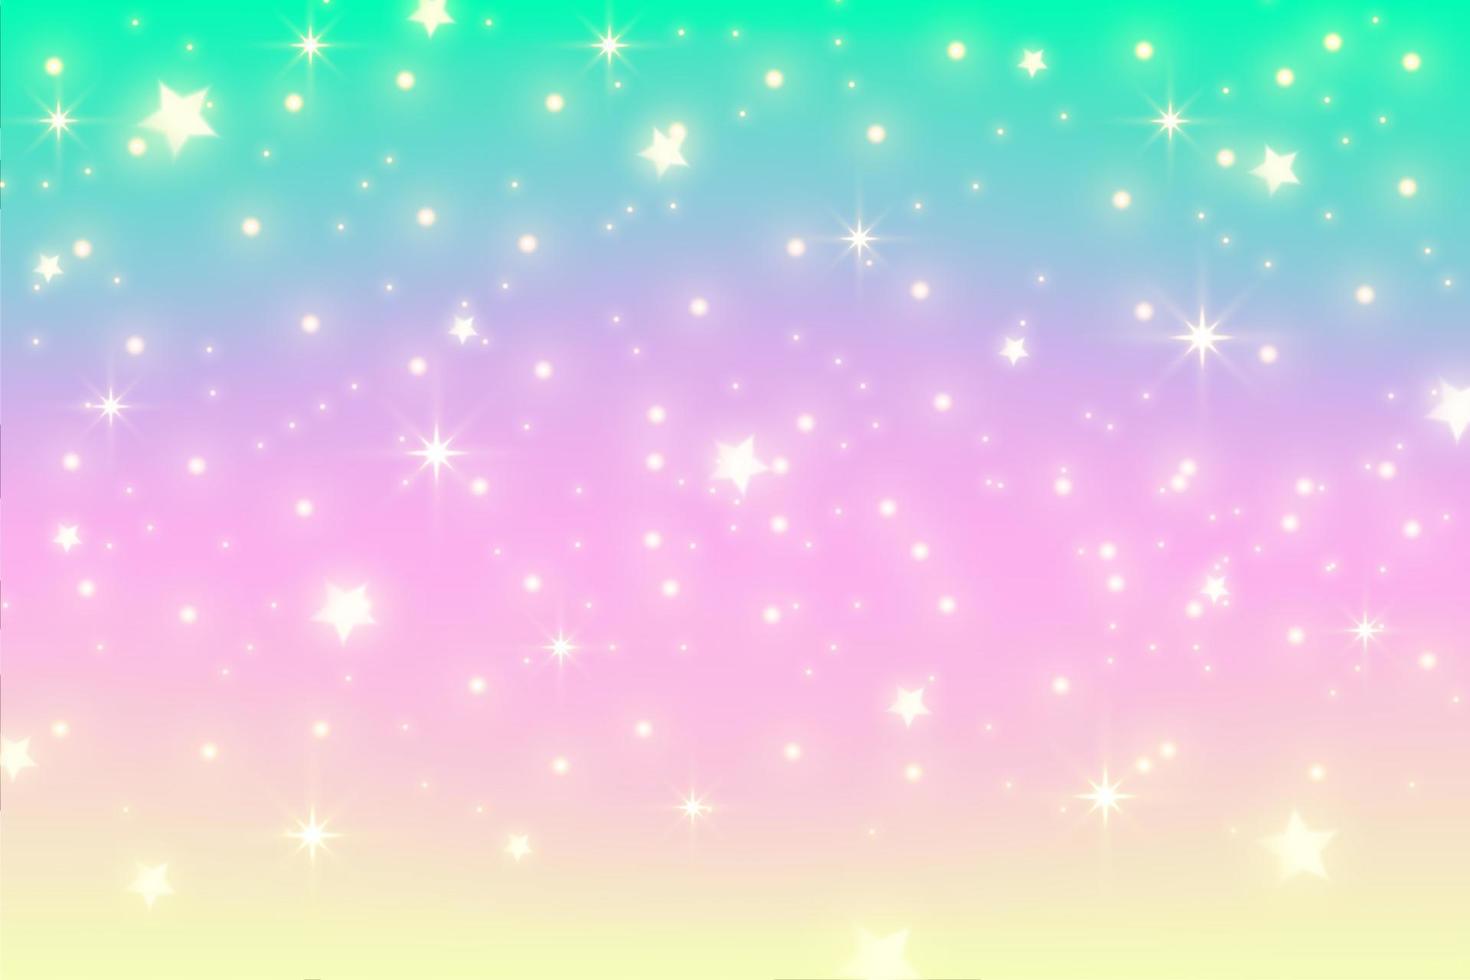 sfondo di unicorno arcobaleno. cielo di colore sfumato pastello con glitter. spazio e stelle magiche della galassia. modello astratto di vettore. vettore